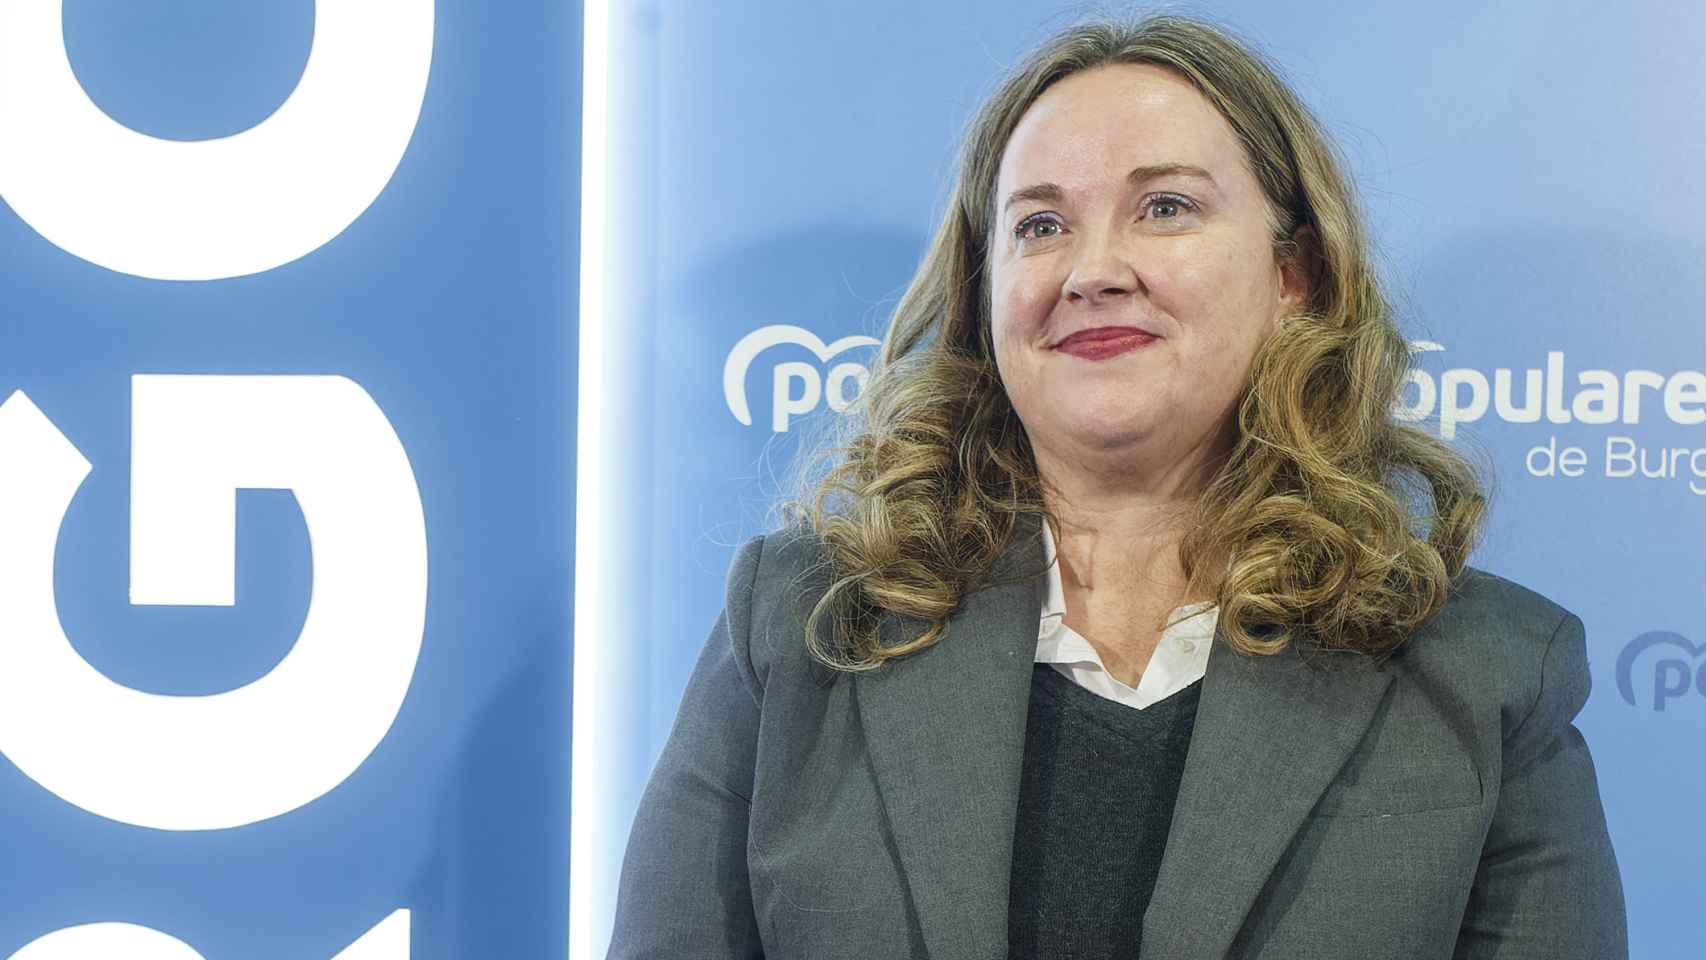 Cristina Ayala, candidata del Partido Popular a la Alcaldía de Burgos